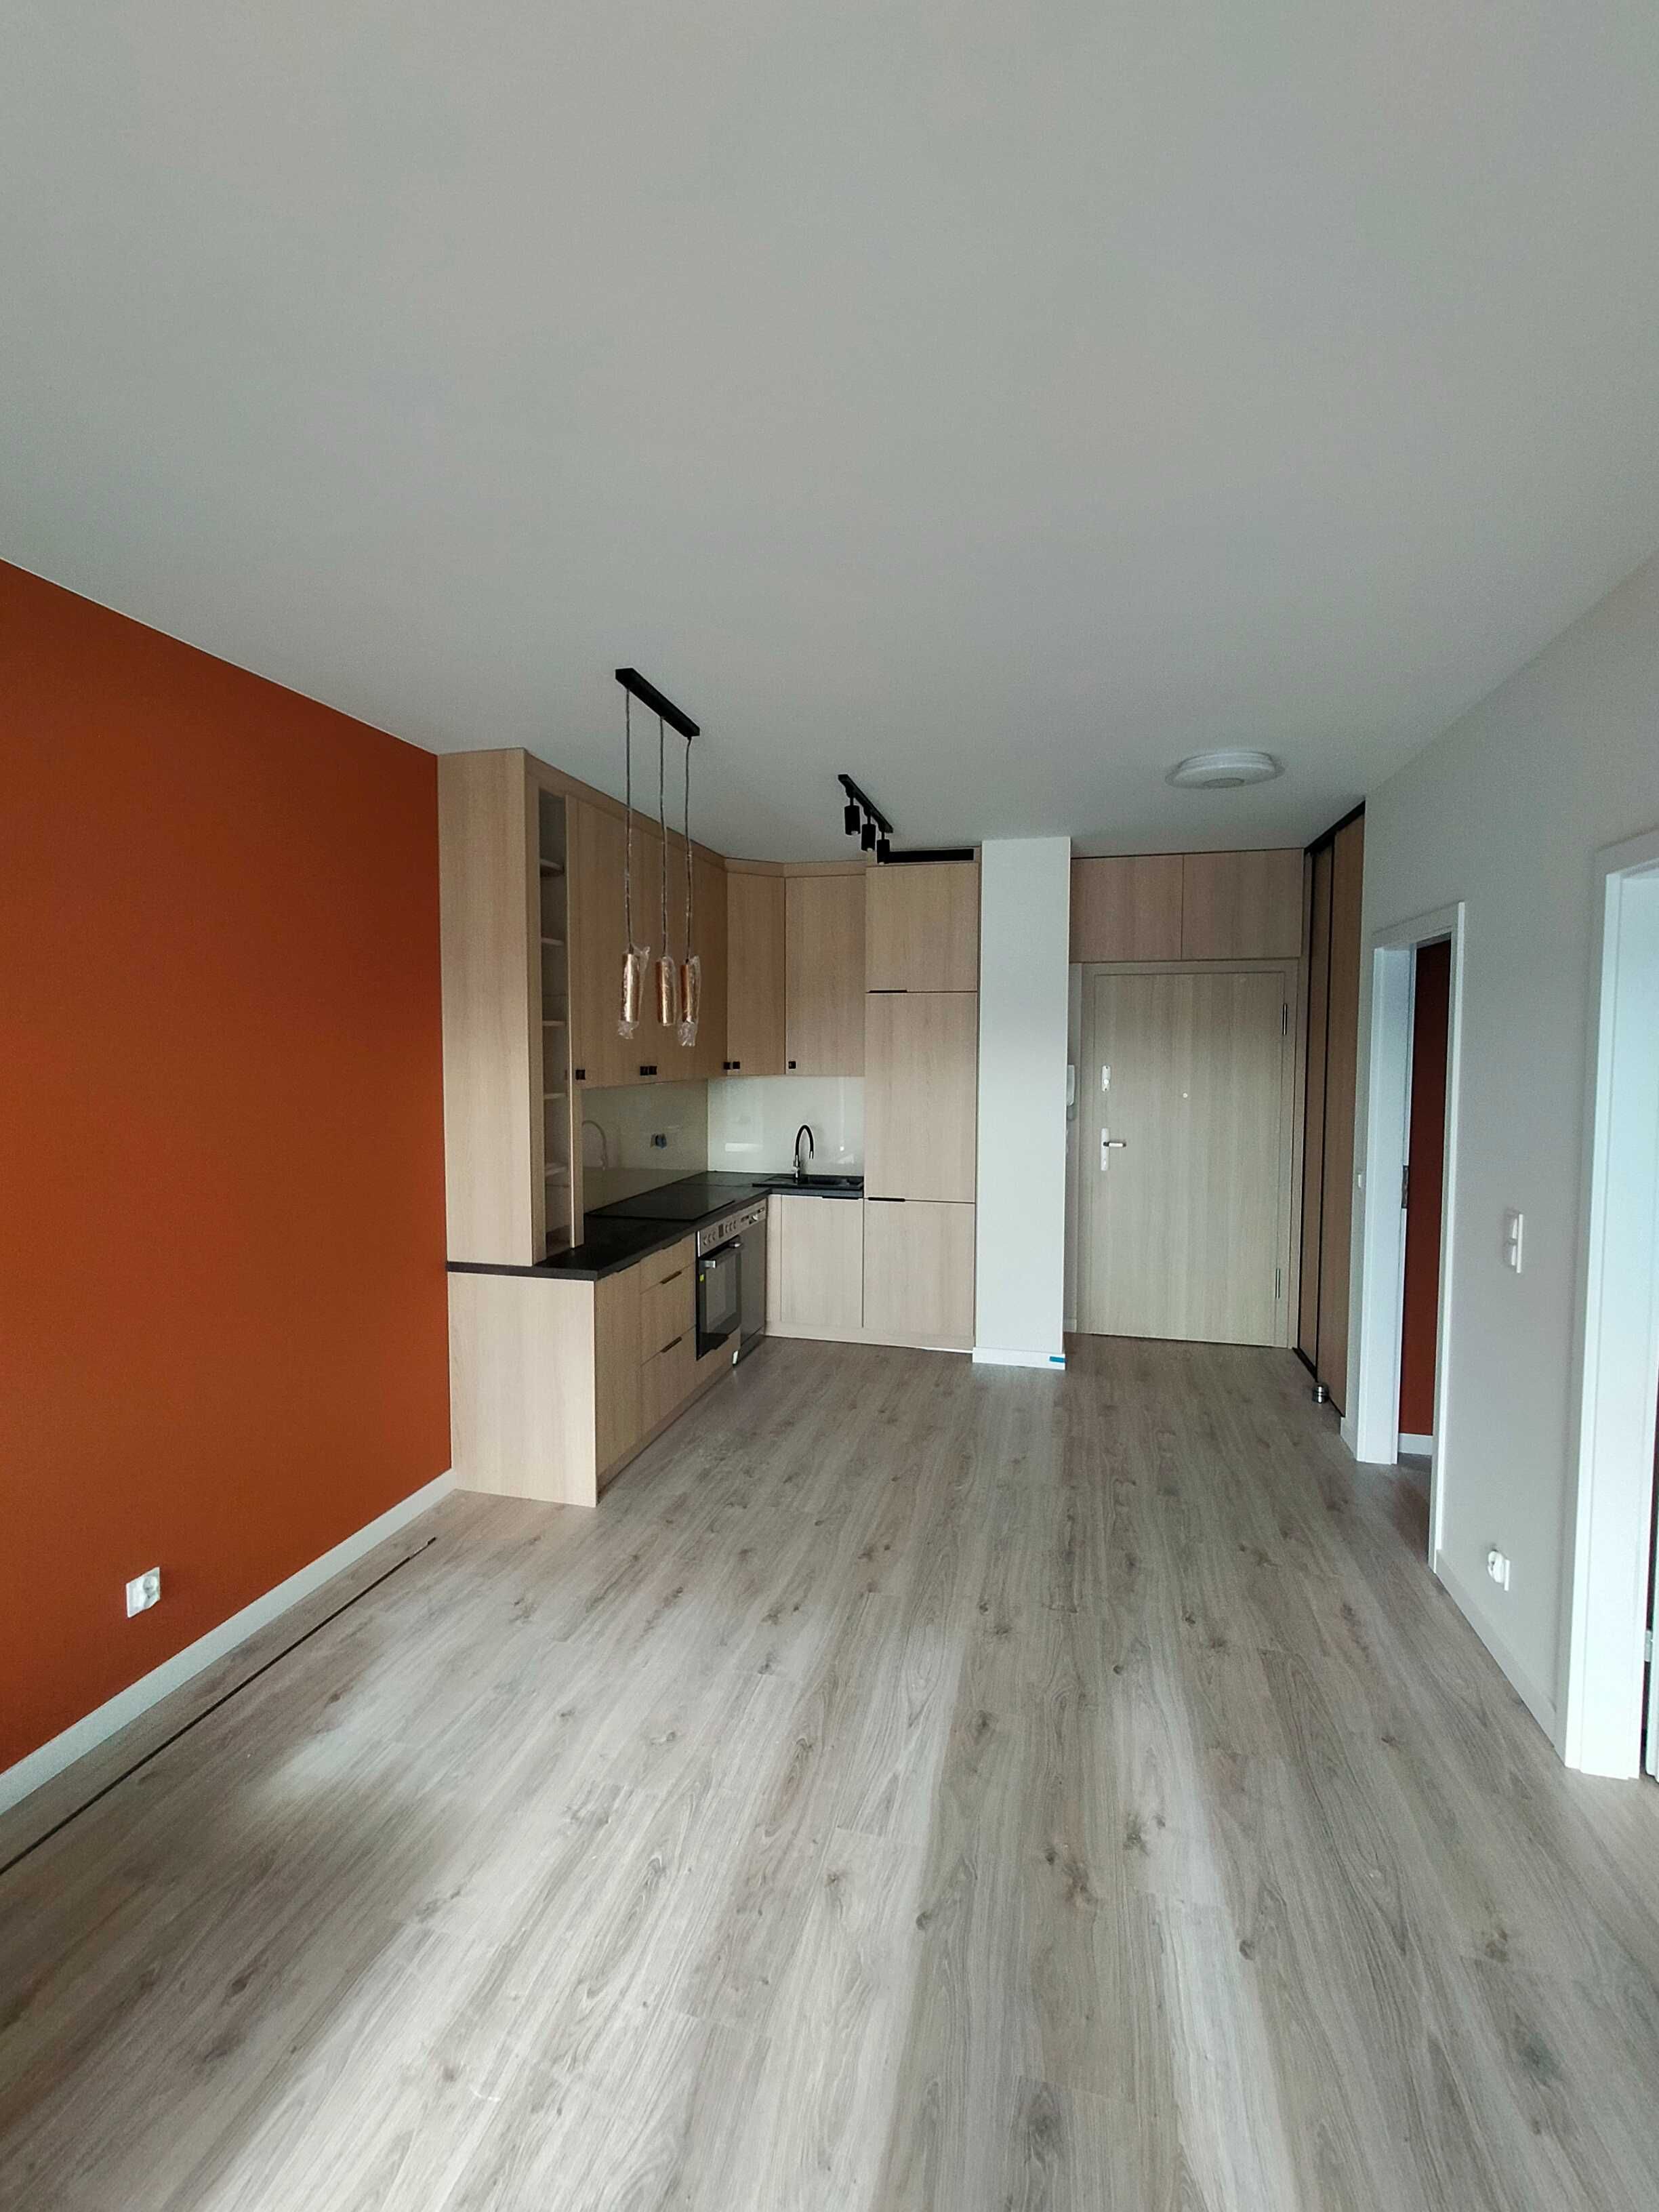 Nowe mieszkanie 2 pok w pełni wyposażone na wynajem Zakrzewo ul Długa